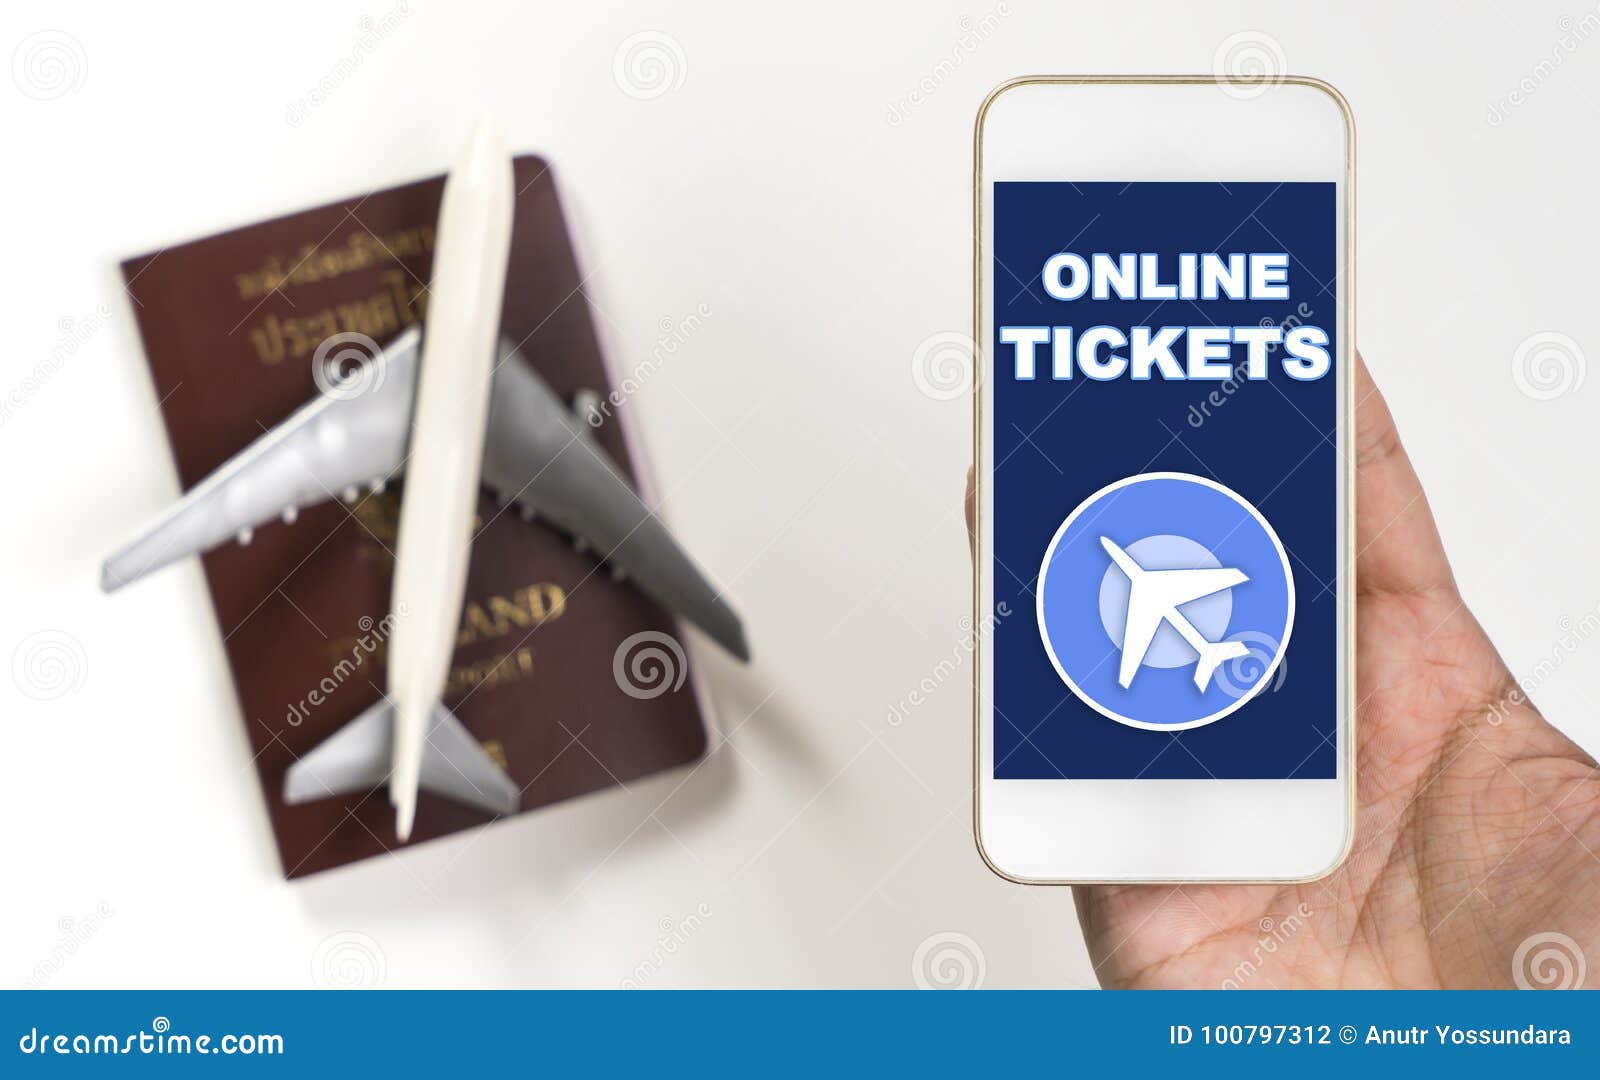 online ticket travel